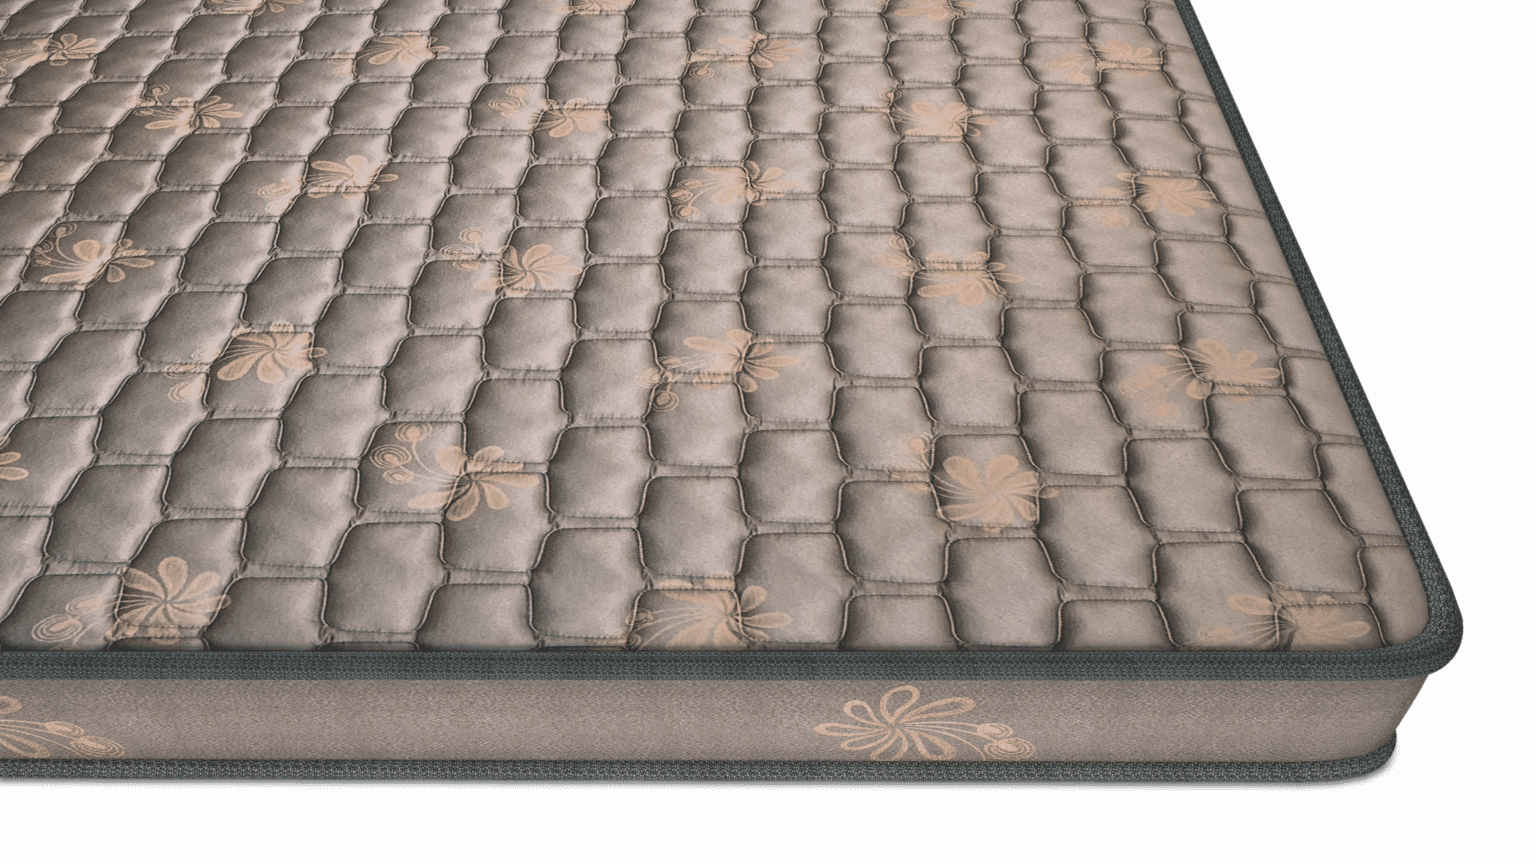 rebonded foam mattress online